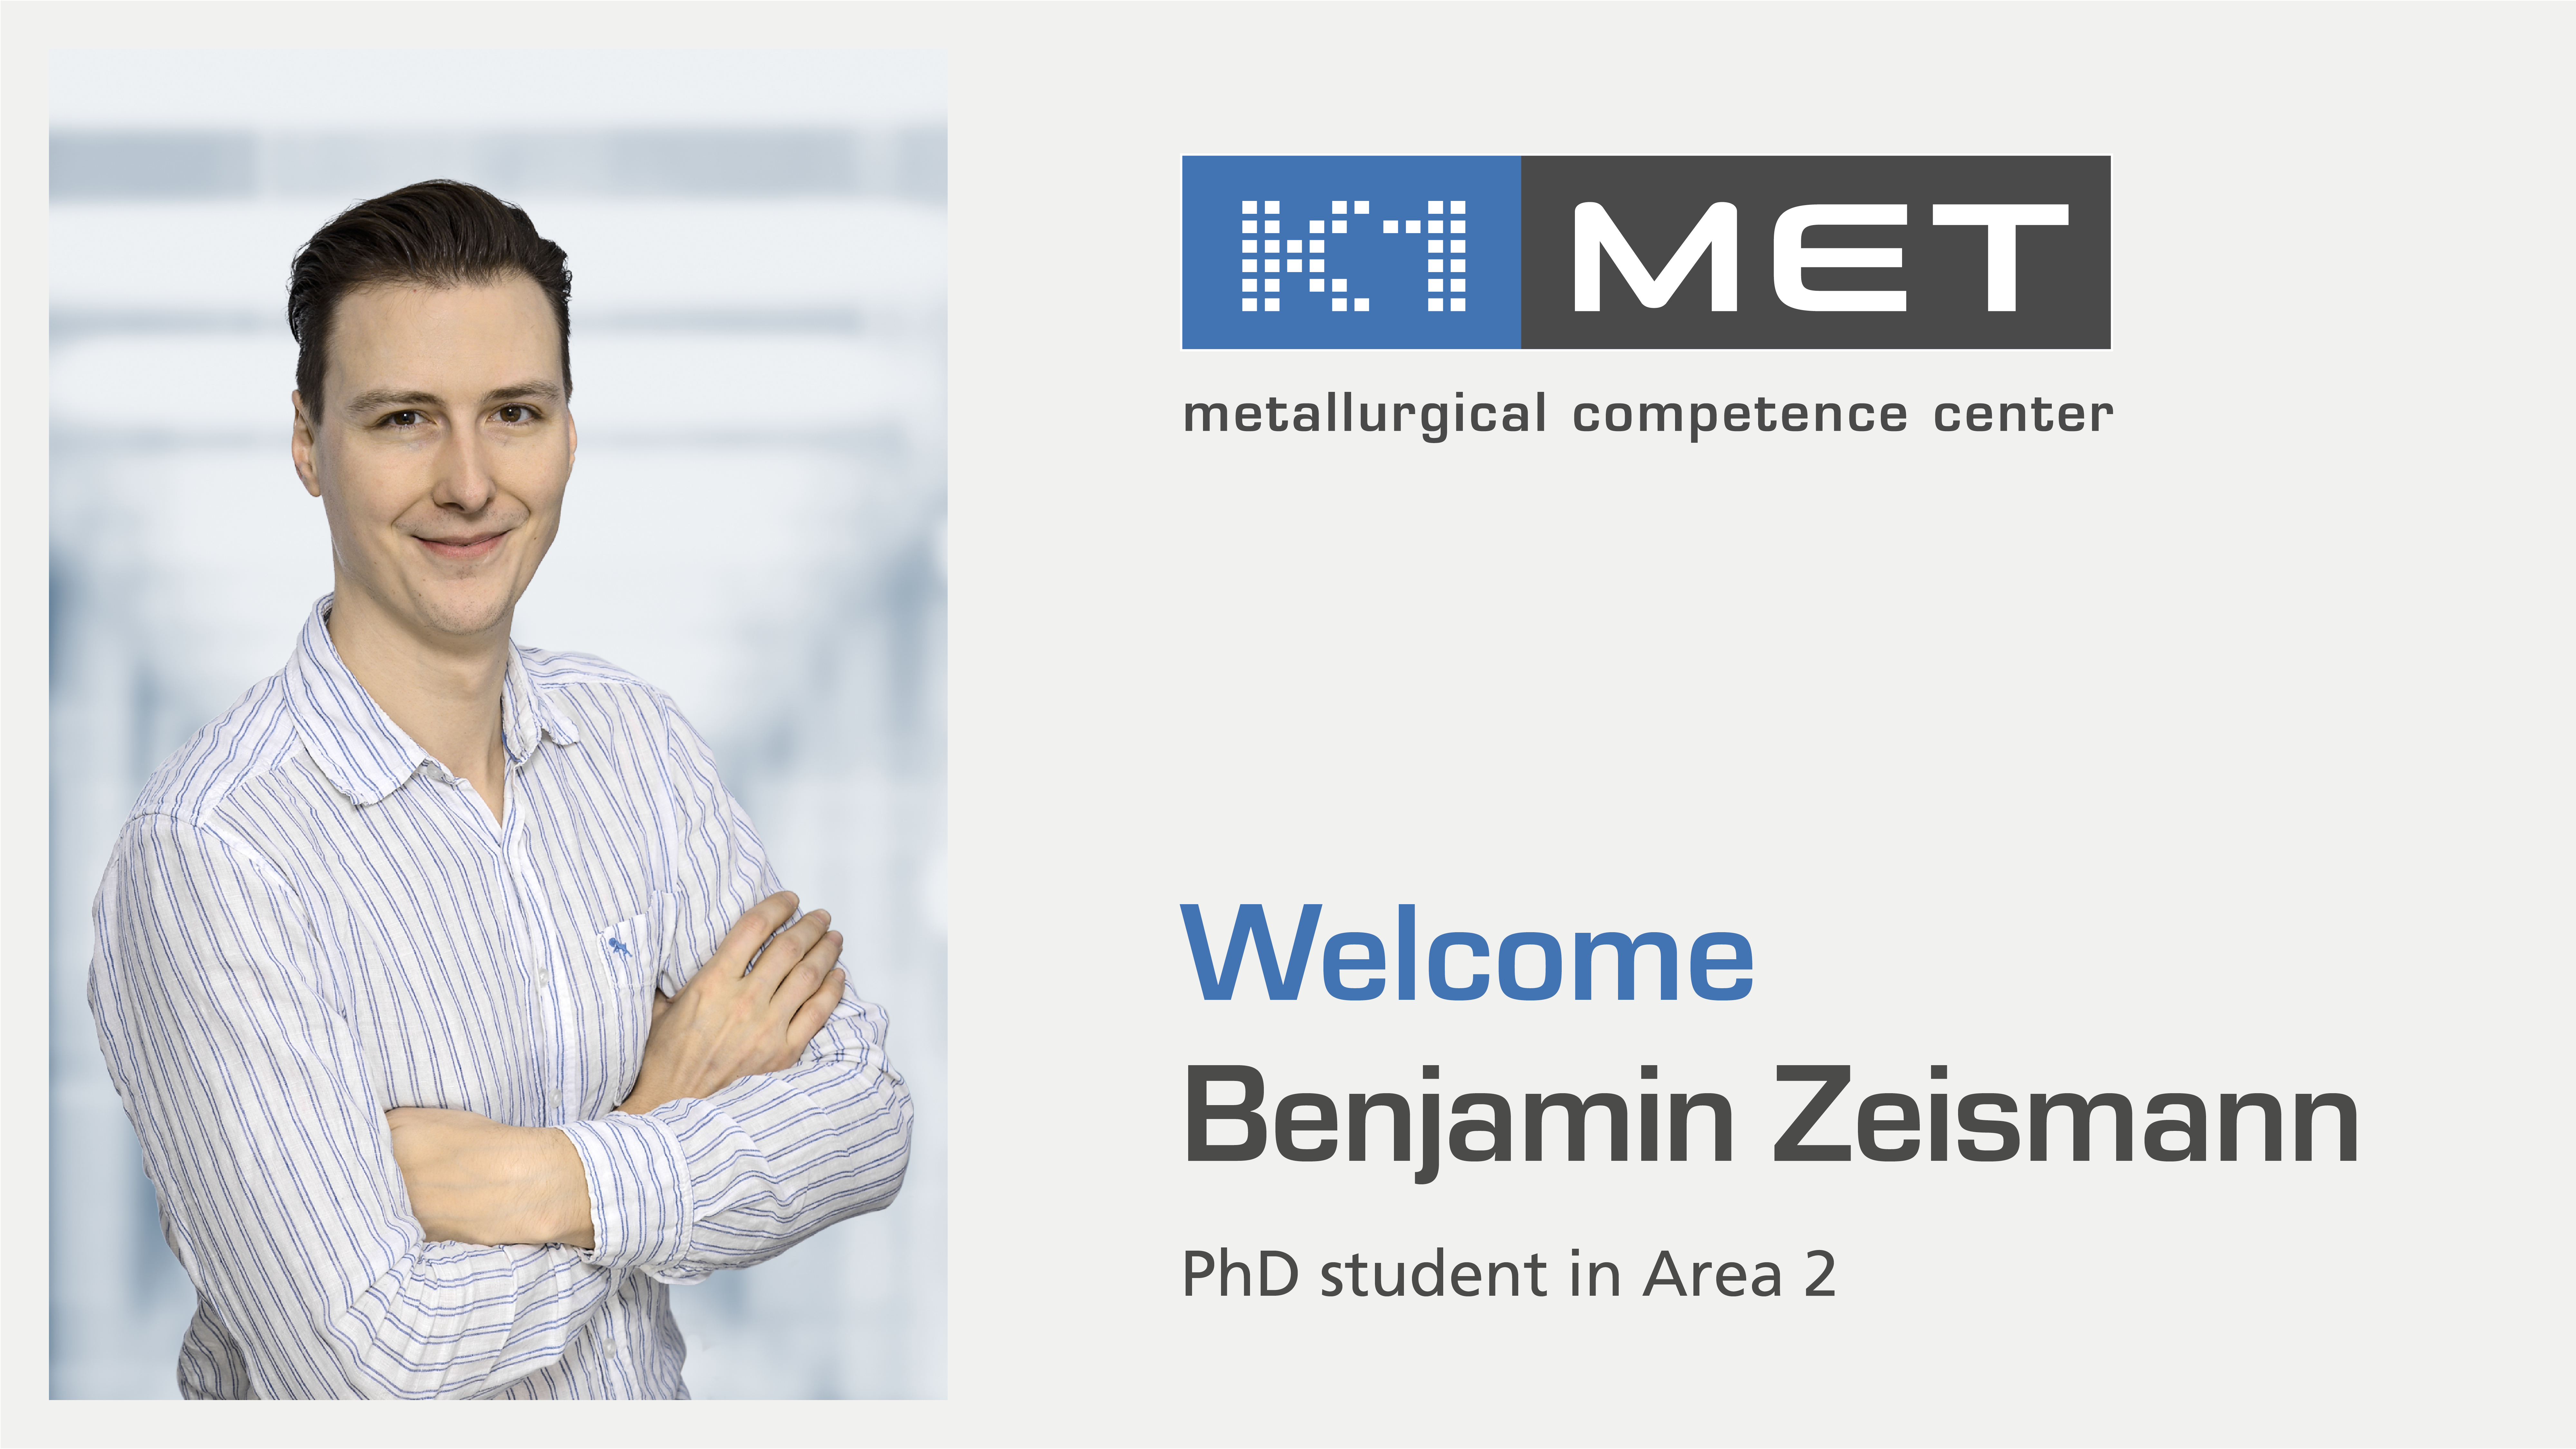 Welcome Benjamin Zeismann, PhD student in Area 2